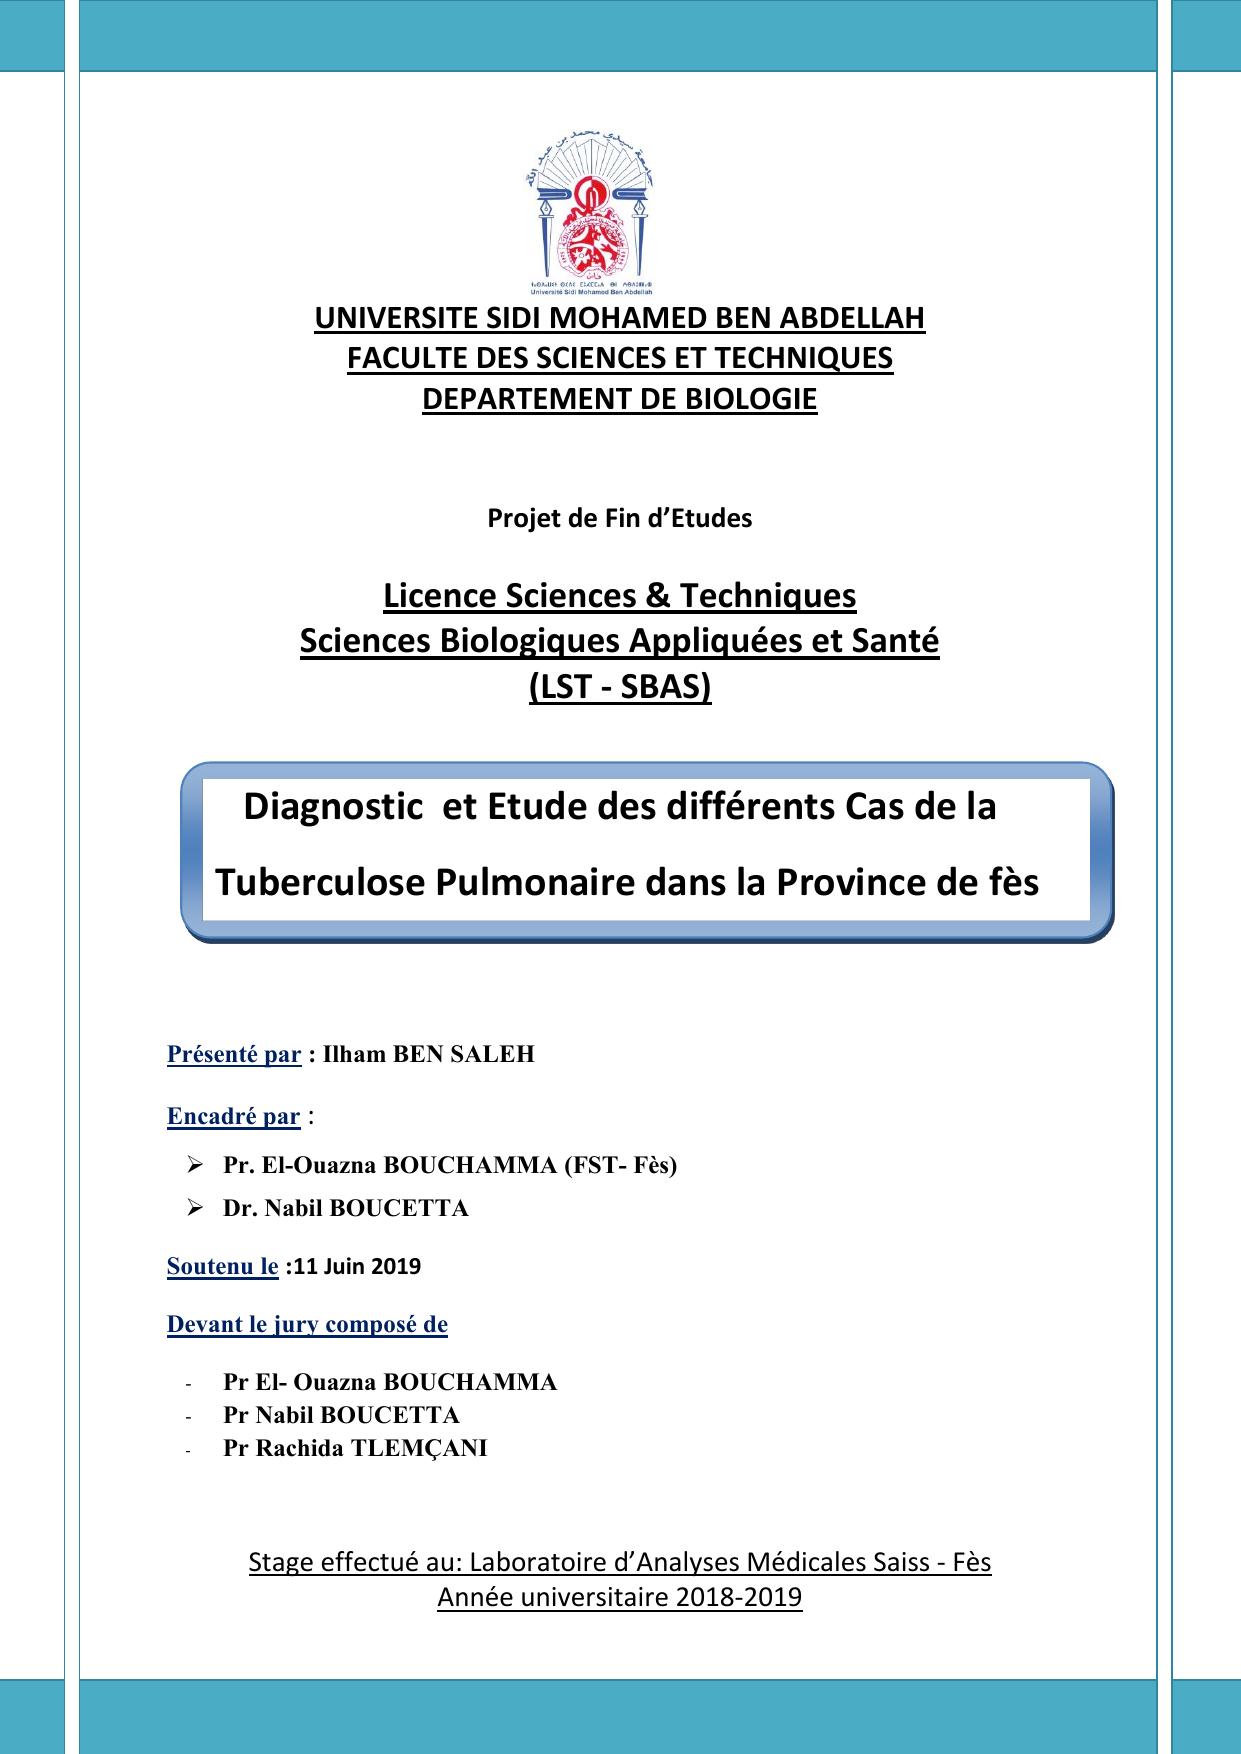 Diagnostic et Etude des différents Cas de la Tuberculose Pulmonaire dans la Province de fès